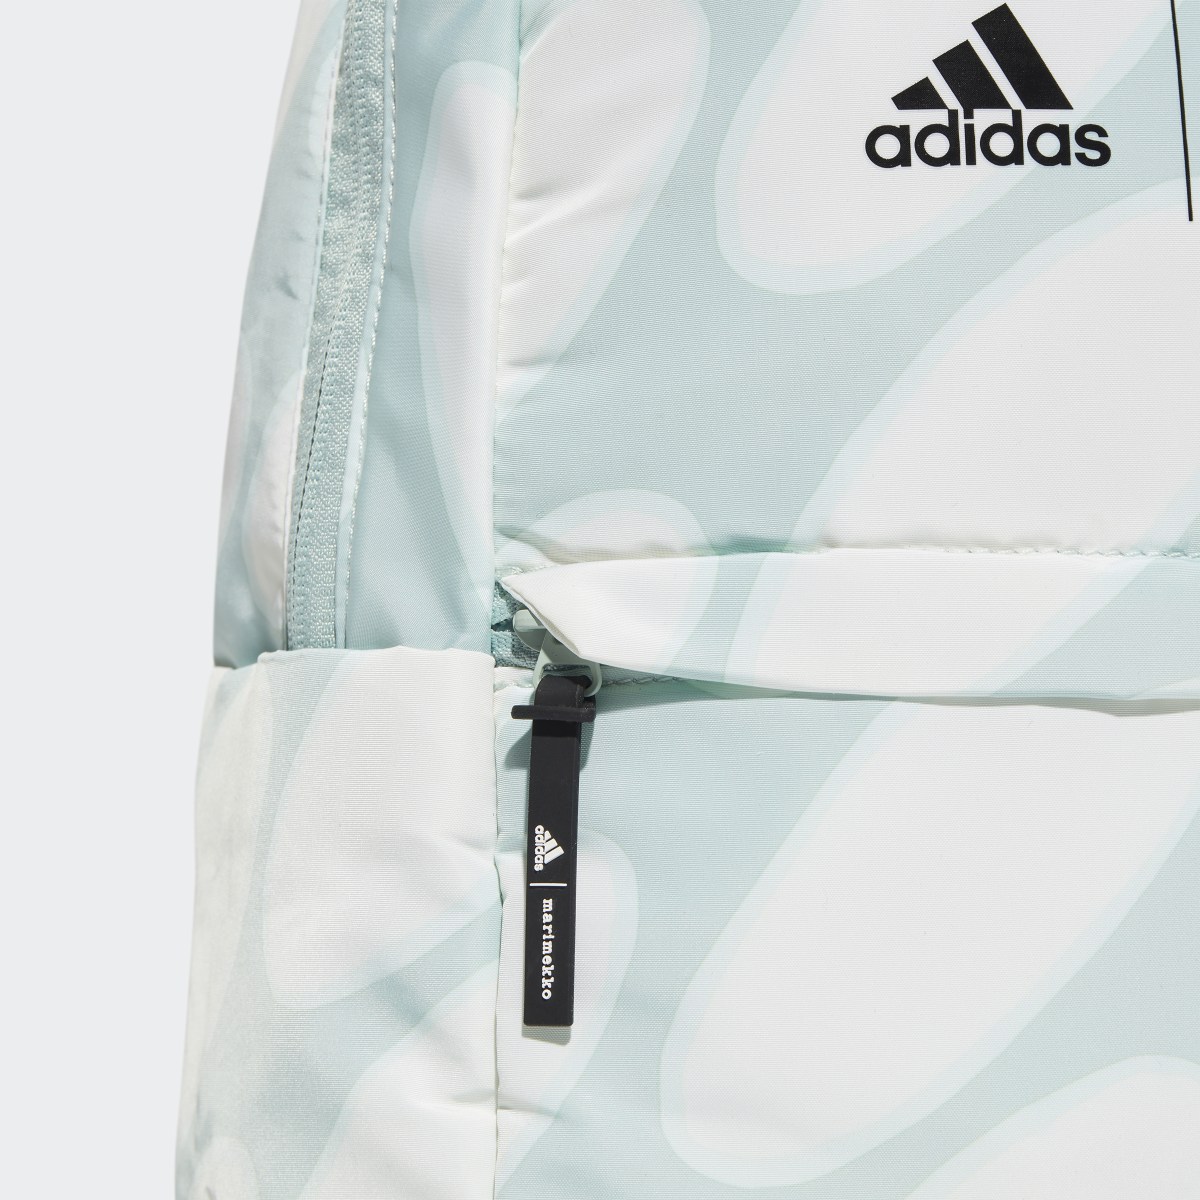 Adidas x Marimekko Backpack. 7